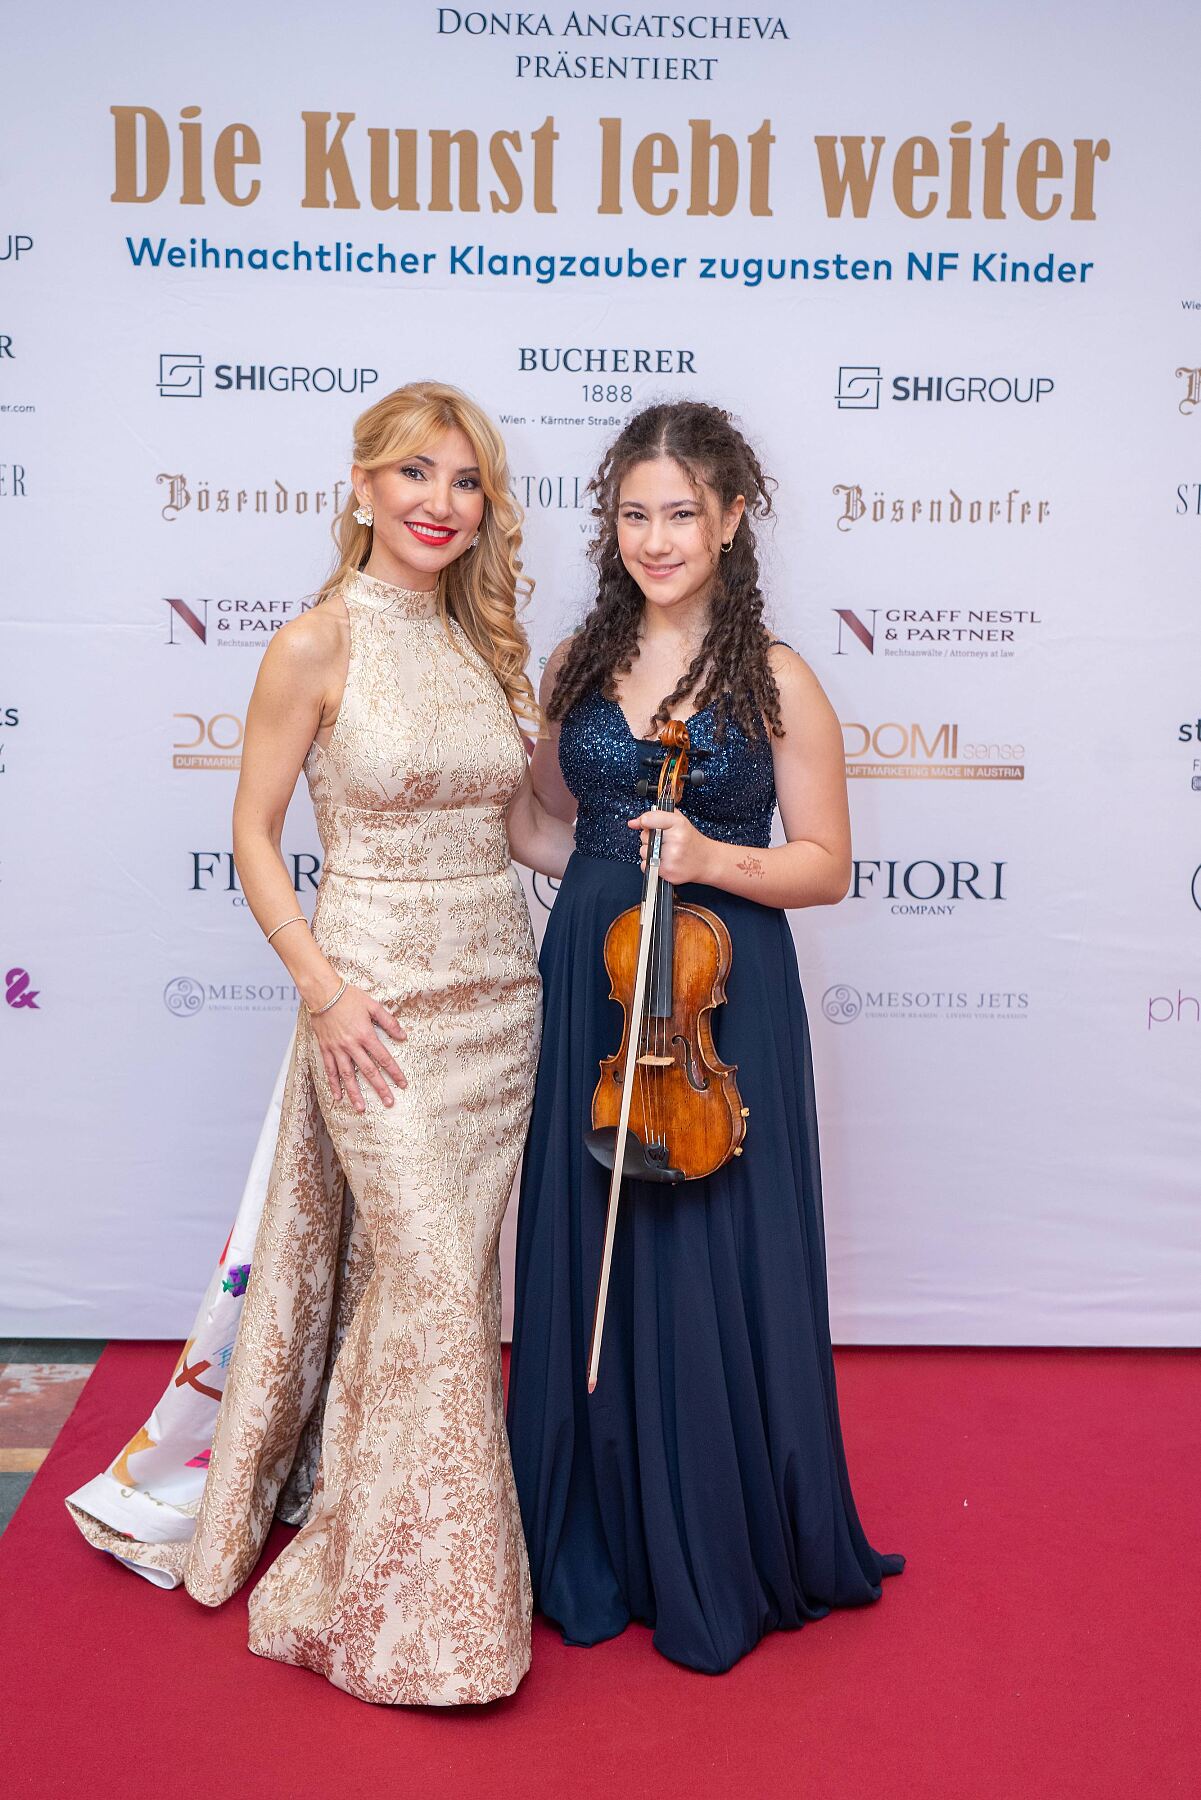 Donka Angatscheva und Mariam Abouzahra